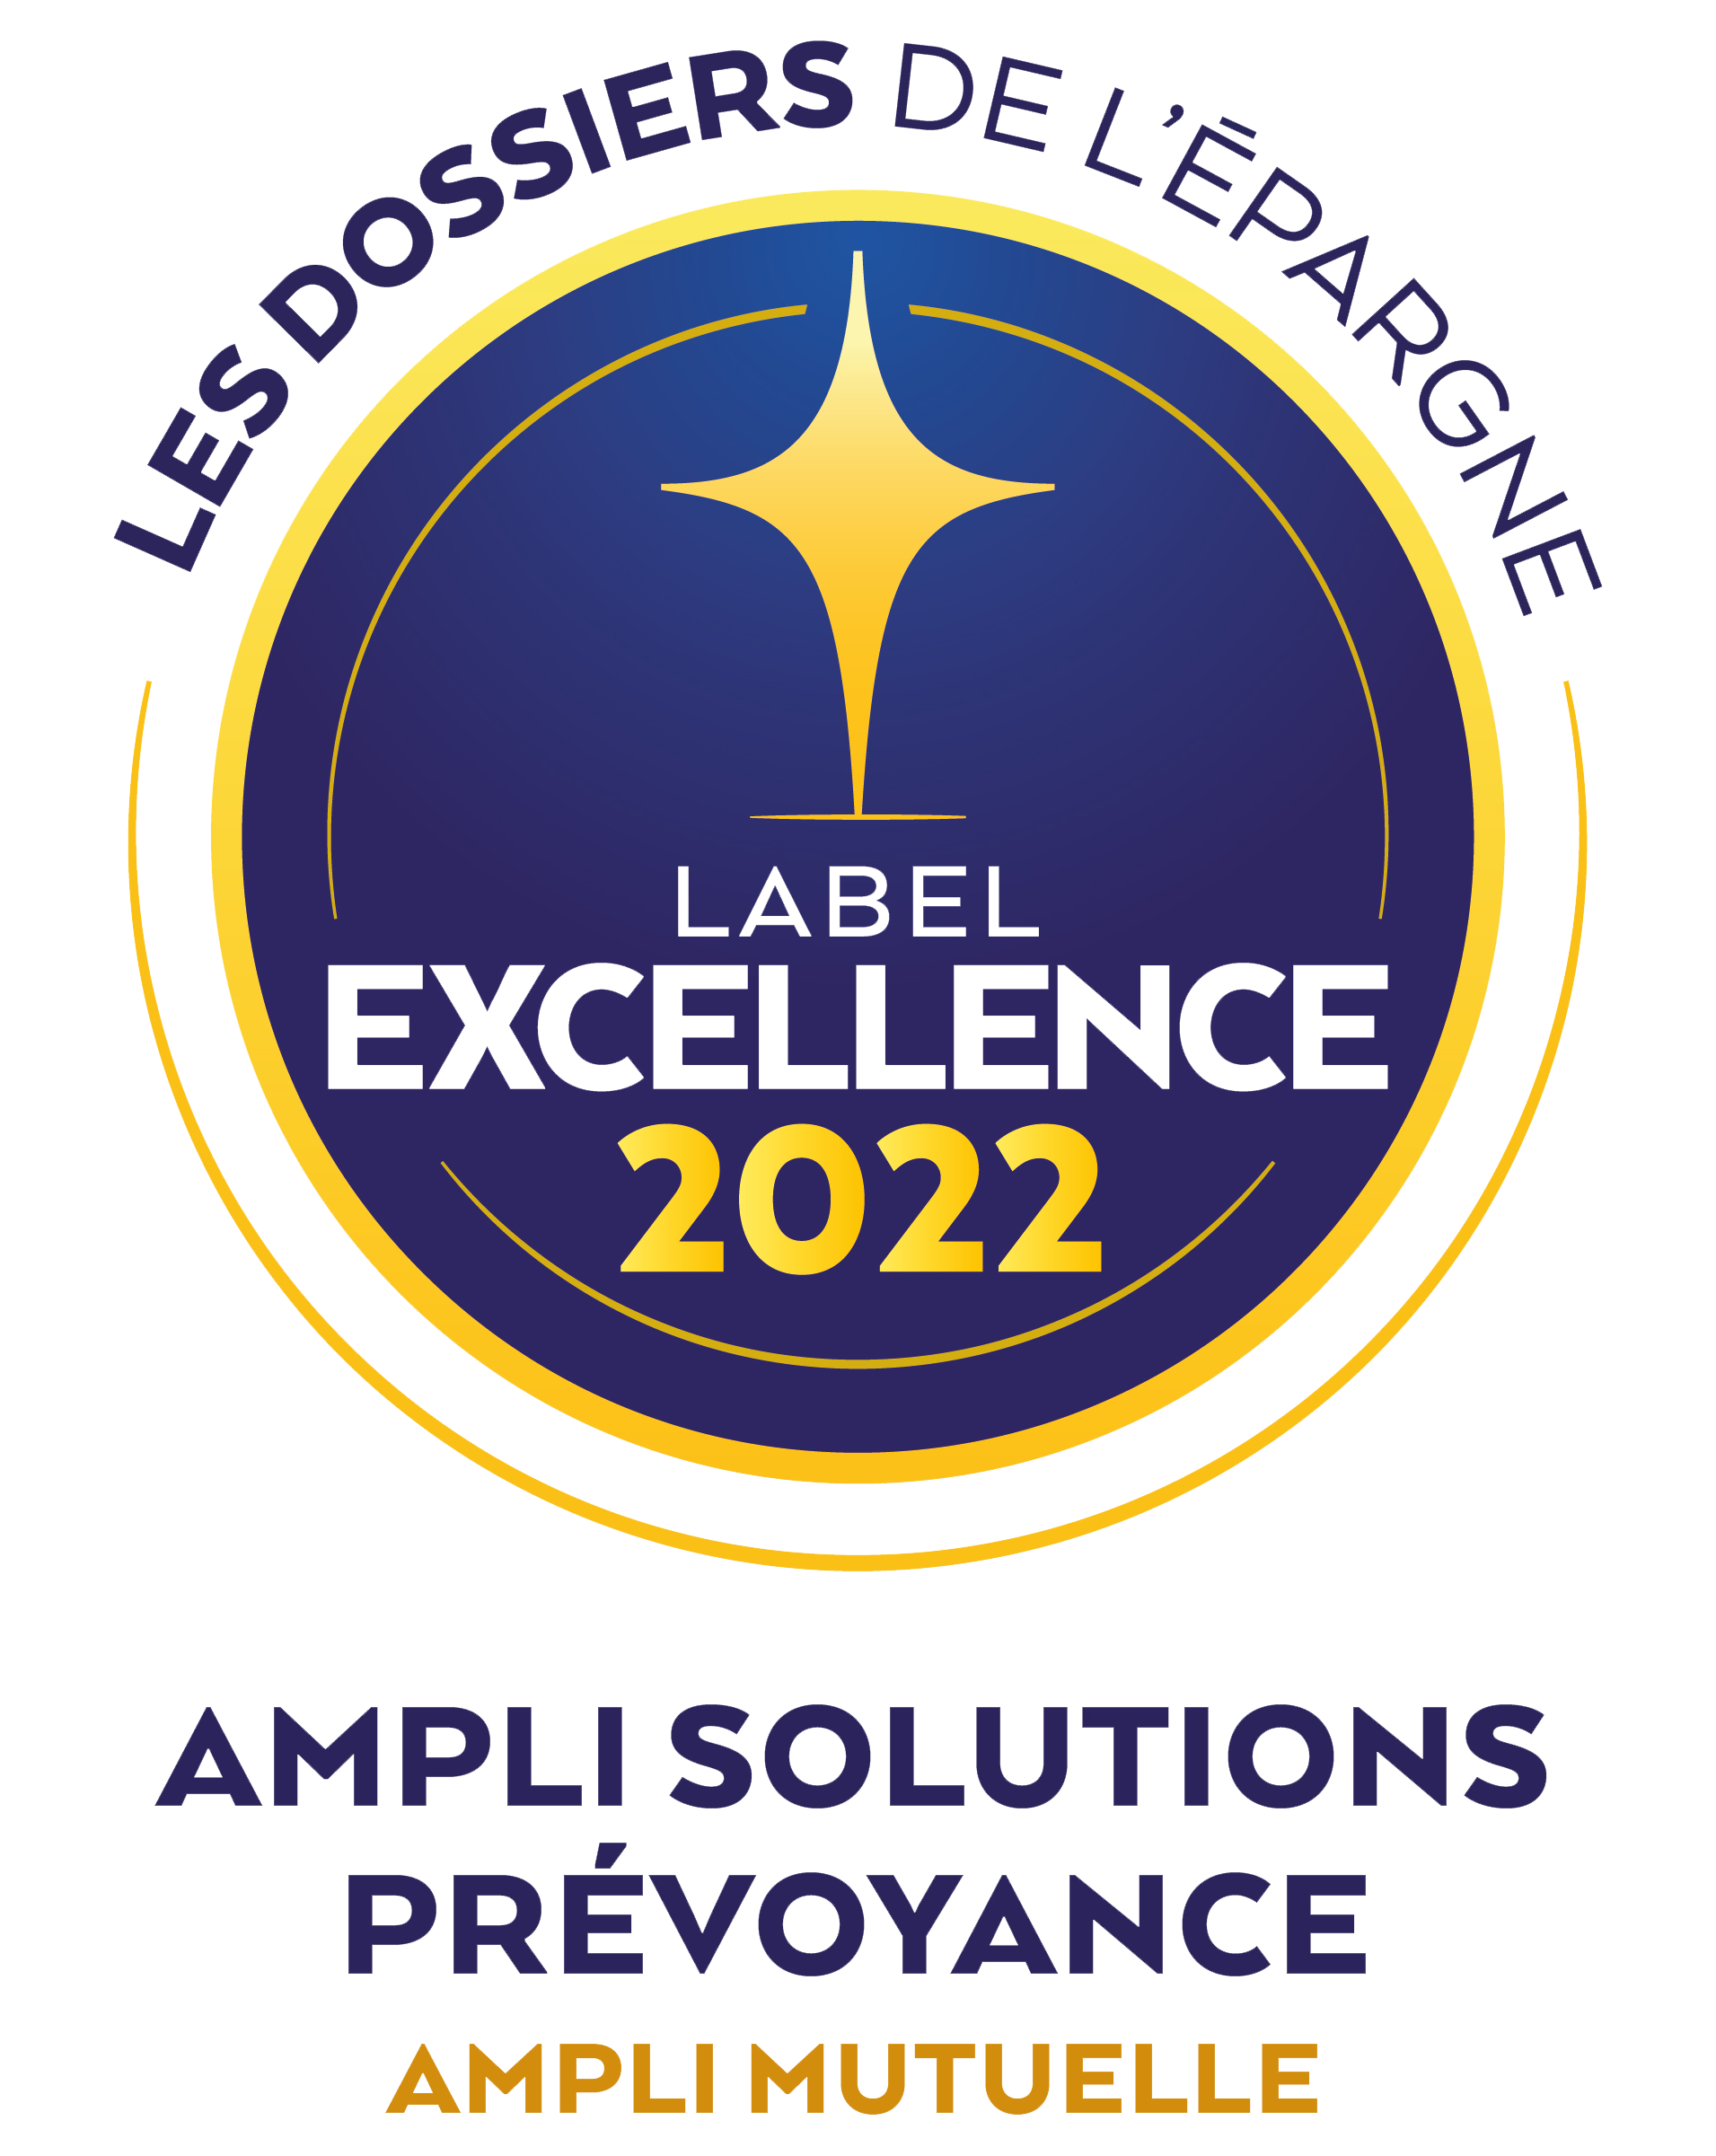 ampli solution prévoyance label excellence 2022 